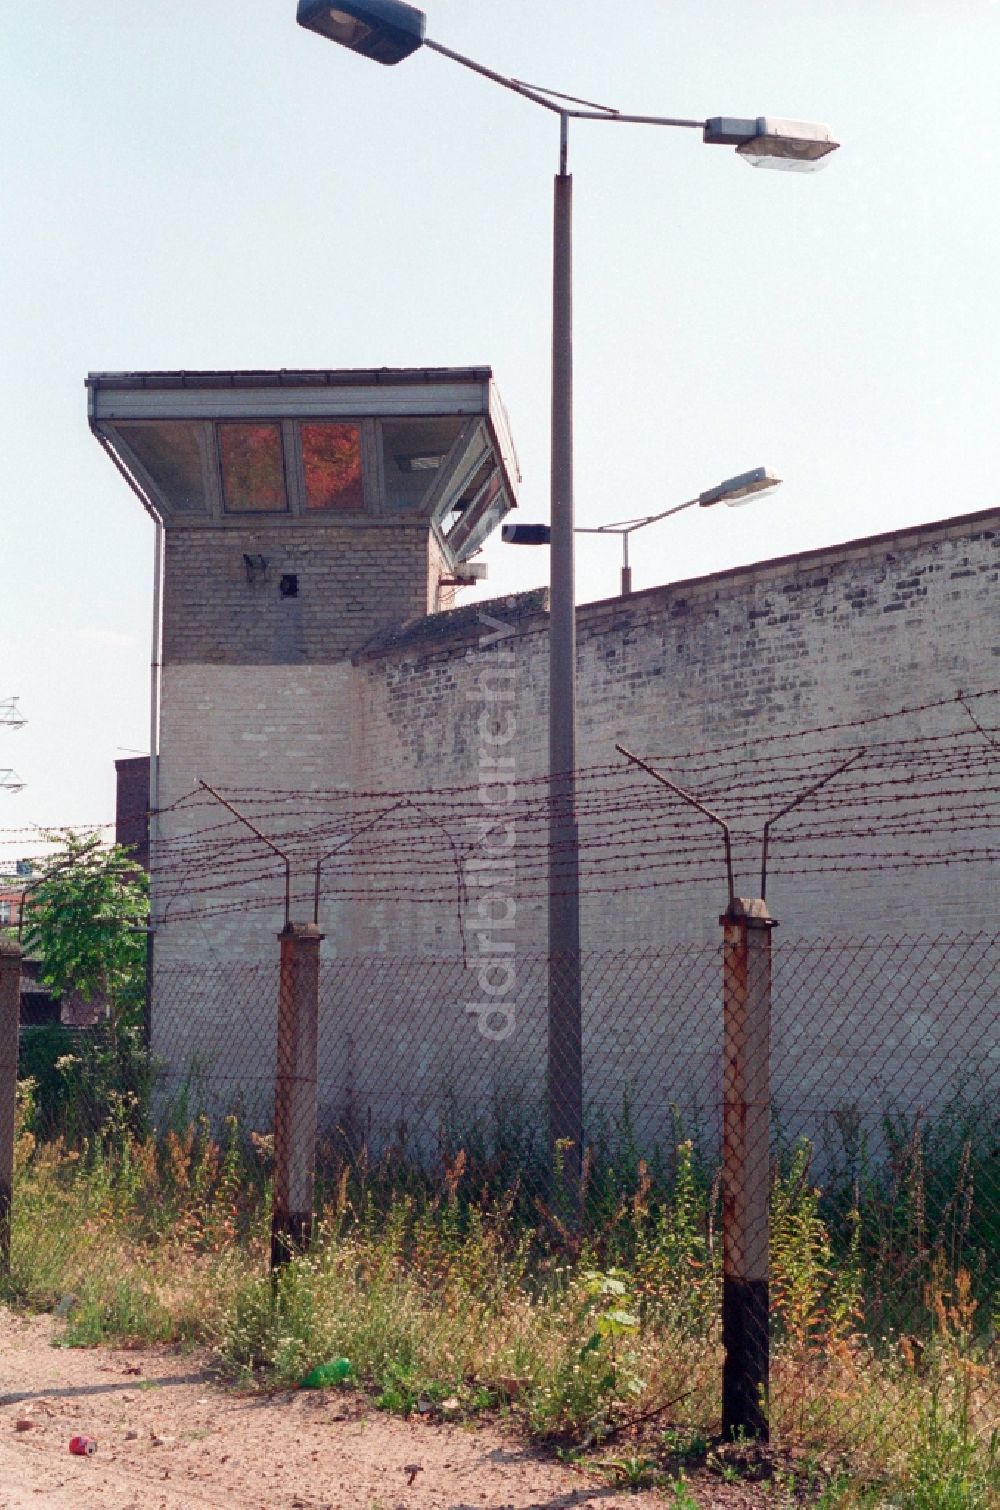 DDR-Fotoarchiv: Berlin - Wachturm mit Stacheldraht auf dem Gelände vom ehemaligen Gefängnis Rummelsburg in Berlin, der ehemaligen Hauptstadt der DDR, Deutsche Demokratische Republik